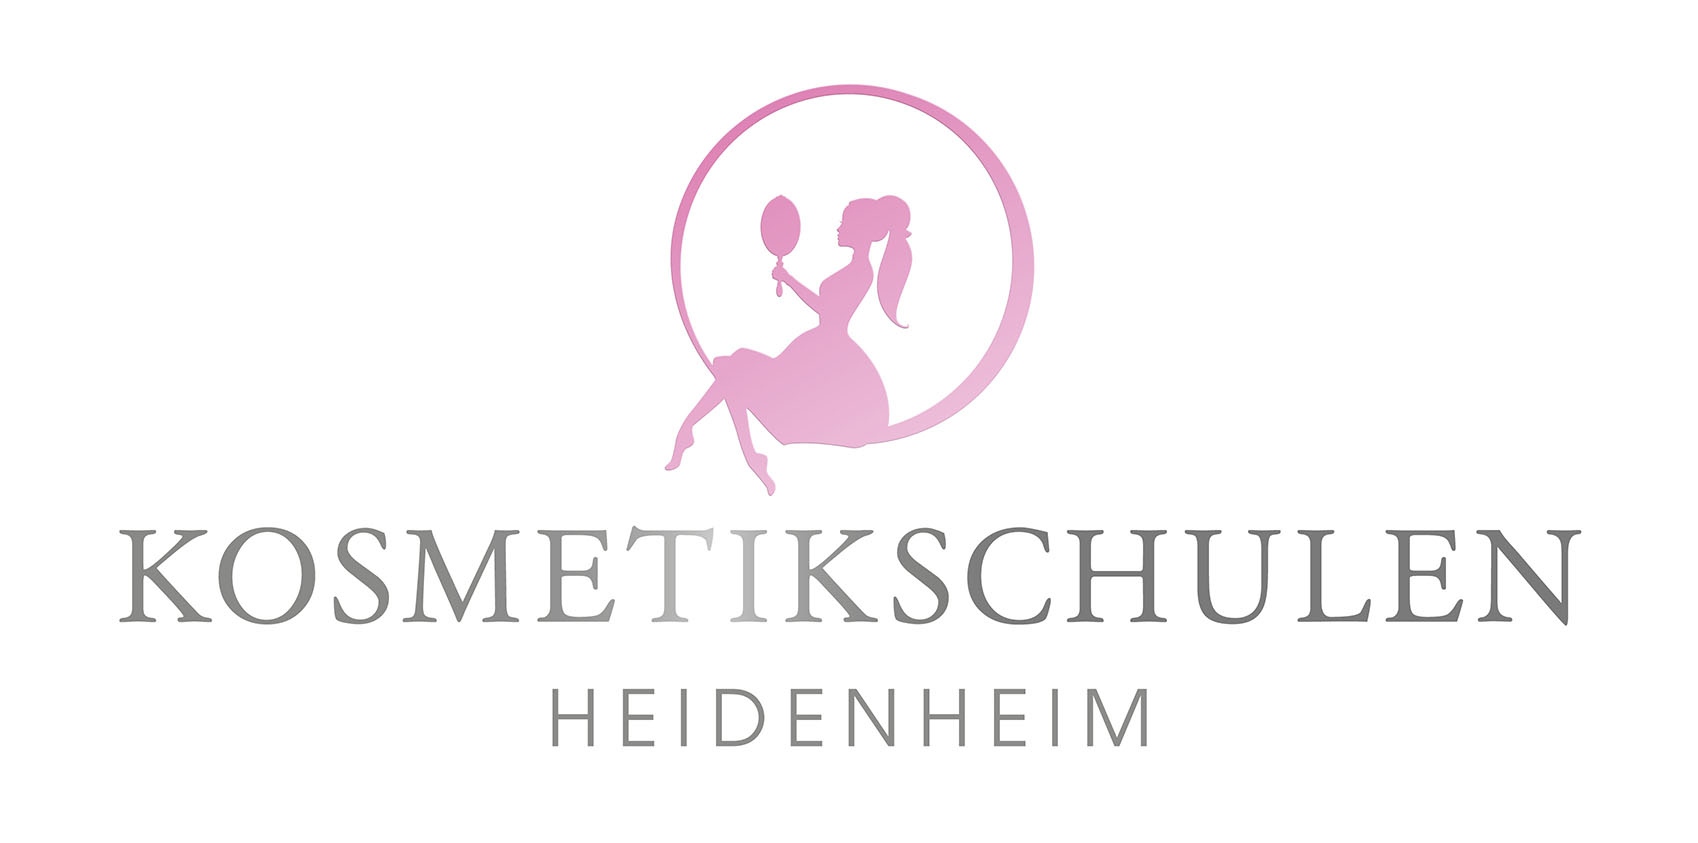 Kosmetikschulen Heidenheim logo